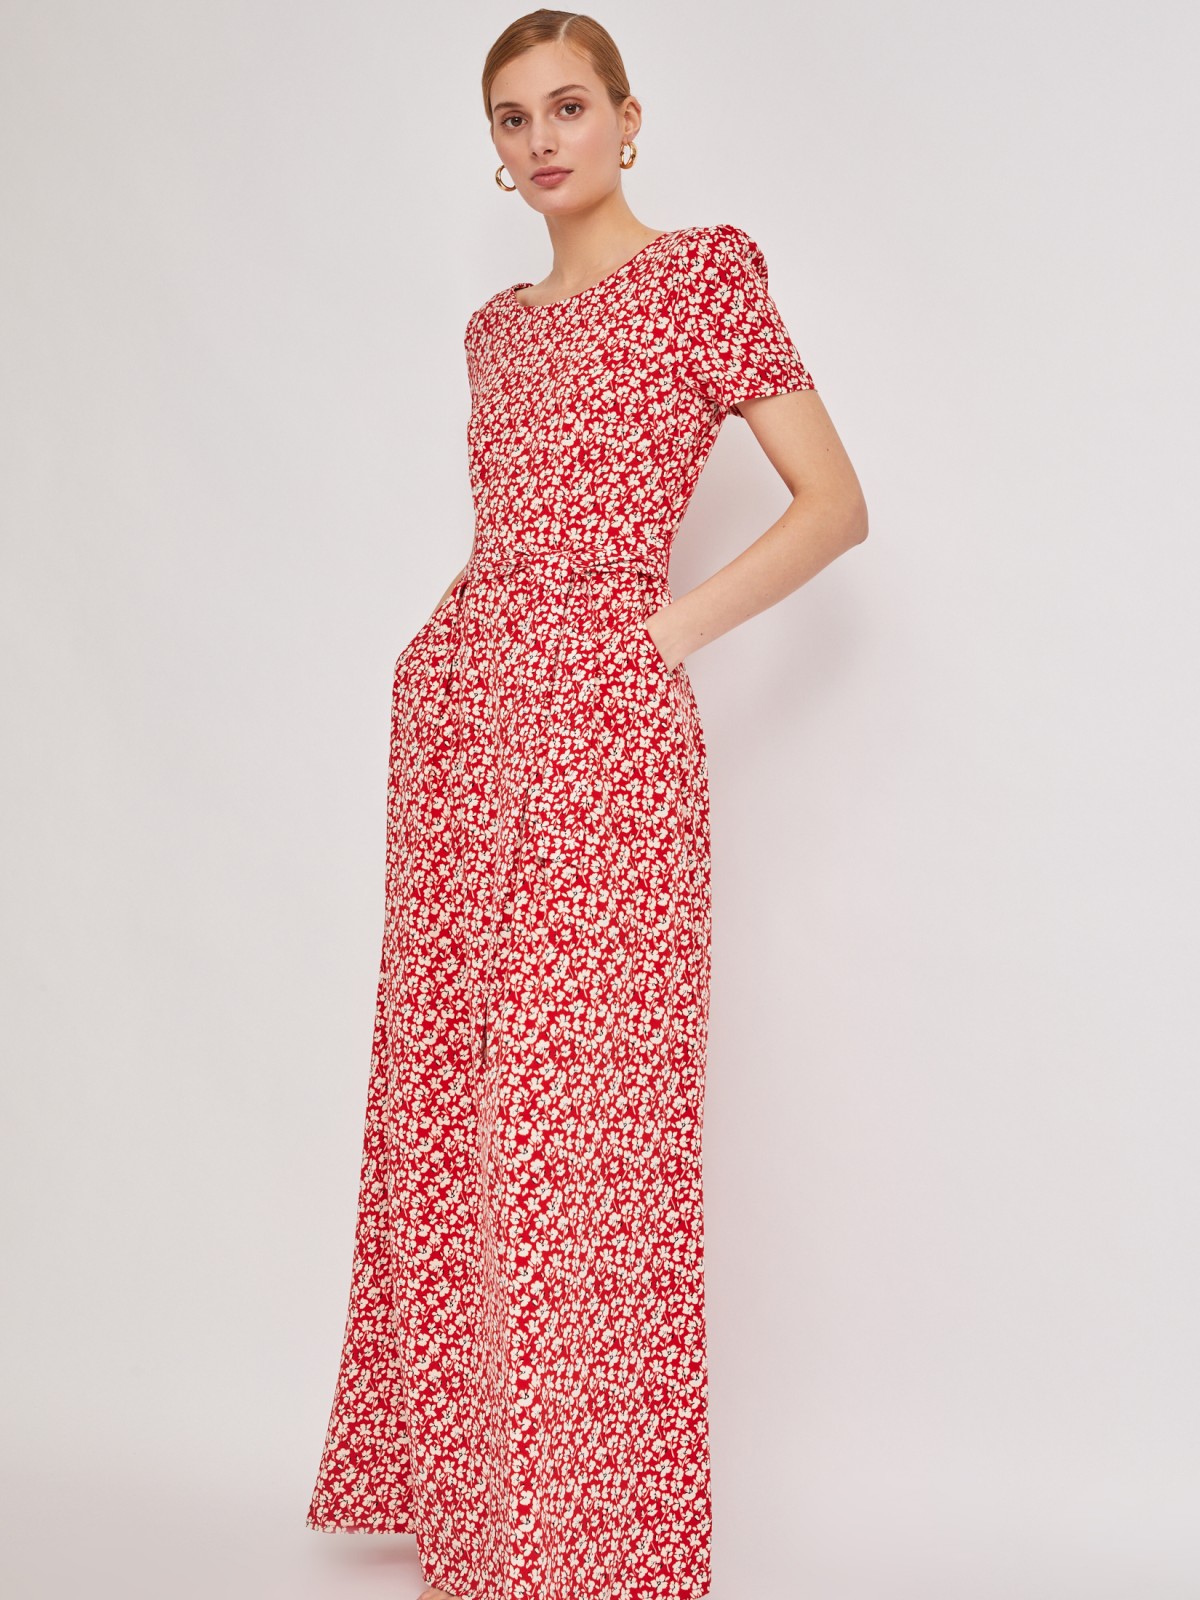 Платье длины макси с поясом zolla 22323827Y063, цвет красный, размер S - фото 2